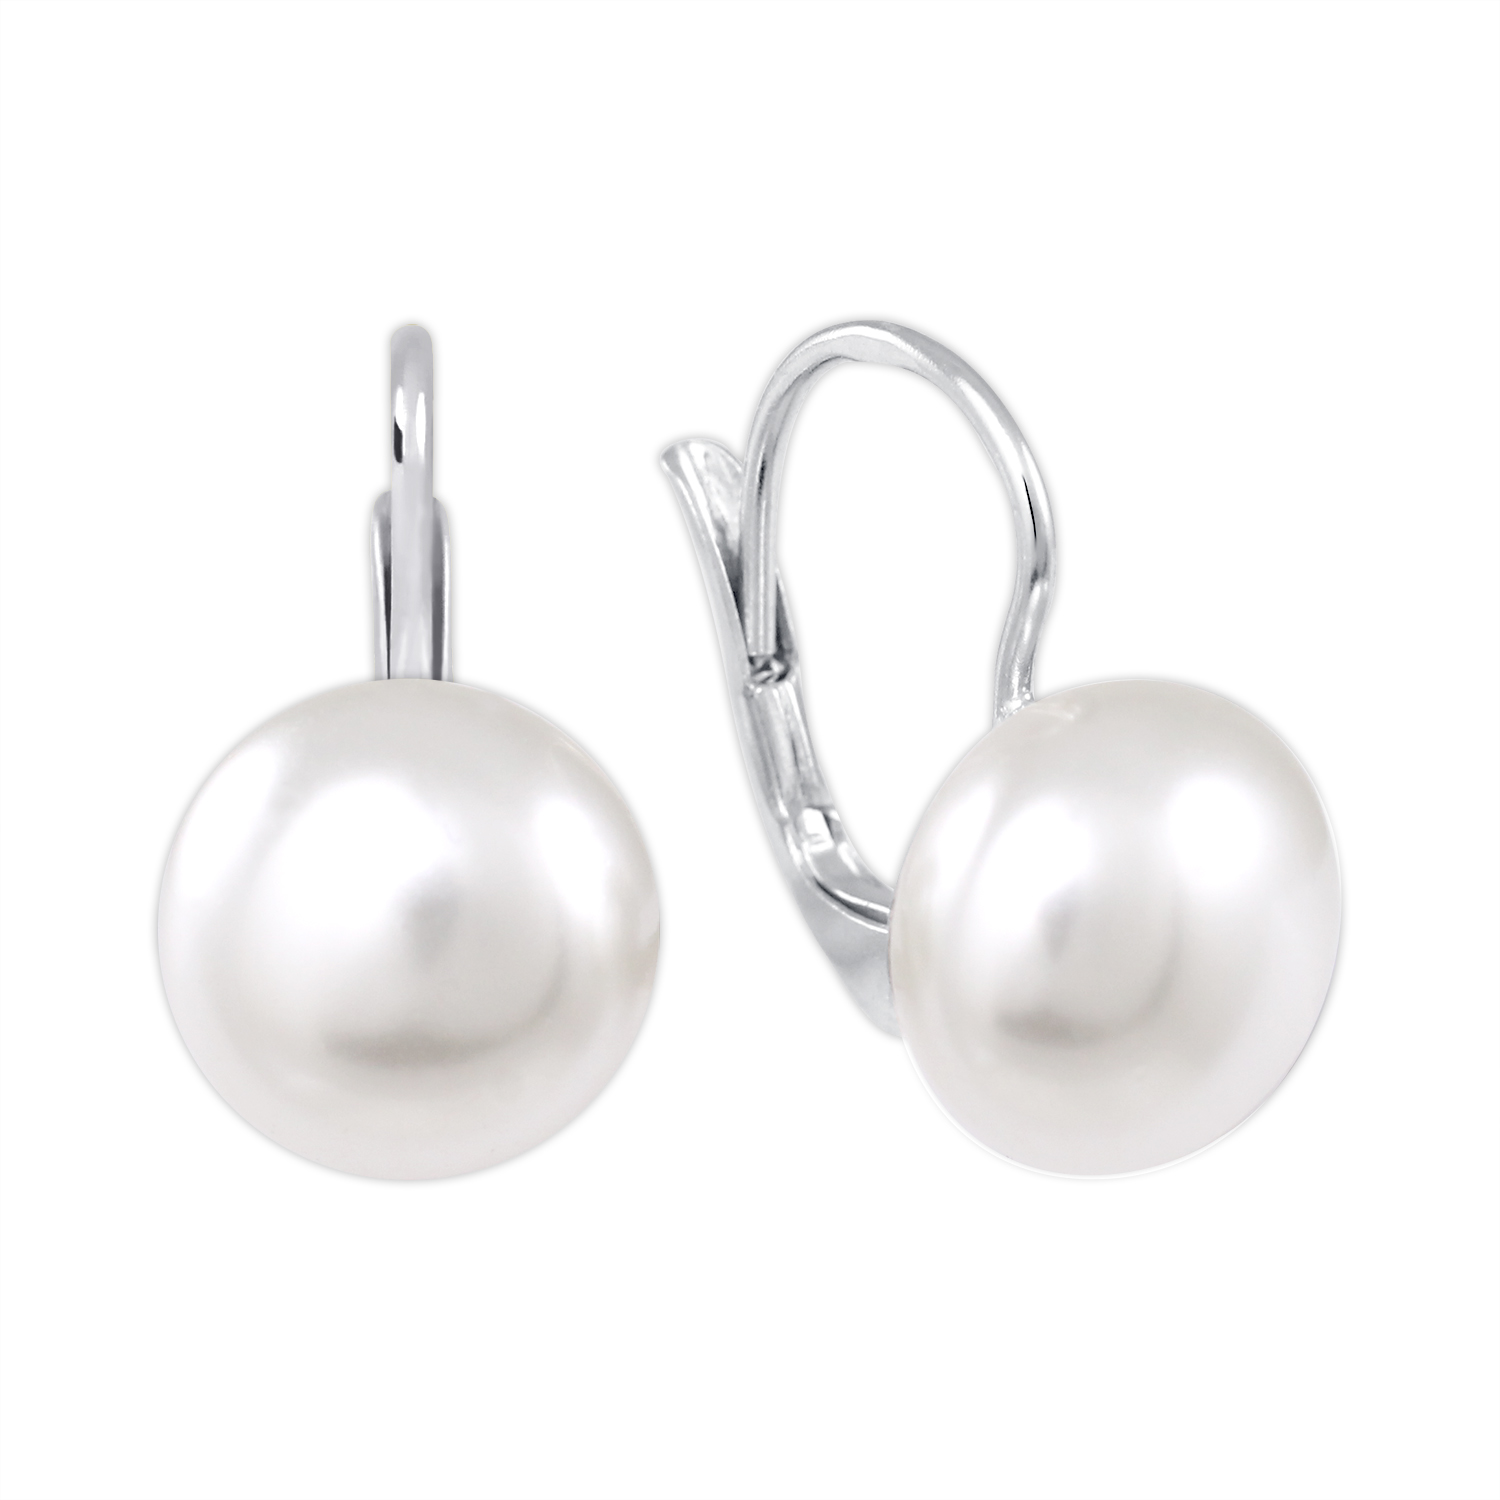 Brilio Silver Elegantní stříbrné náušnice se syntetickou perlou 438 001 01234 0400000